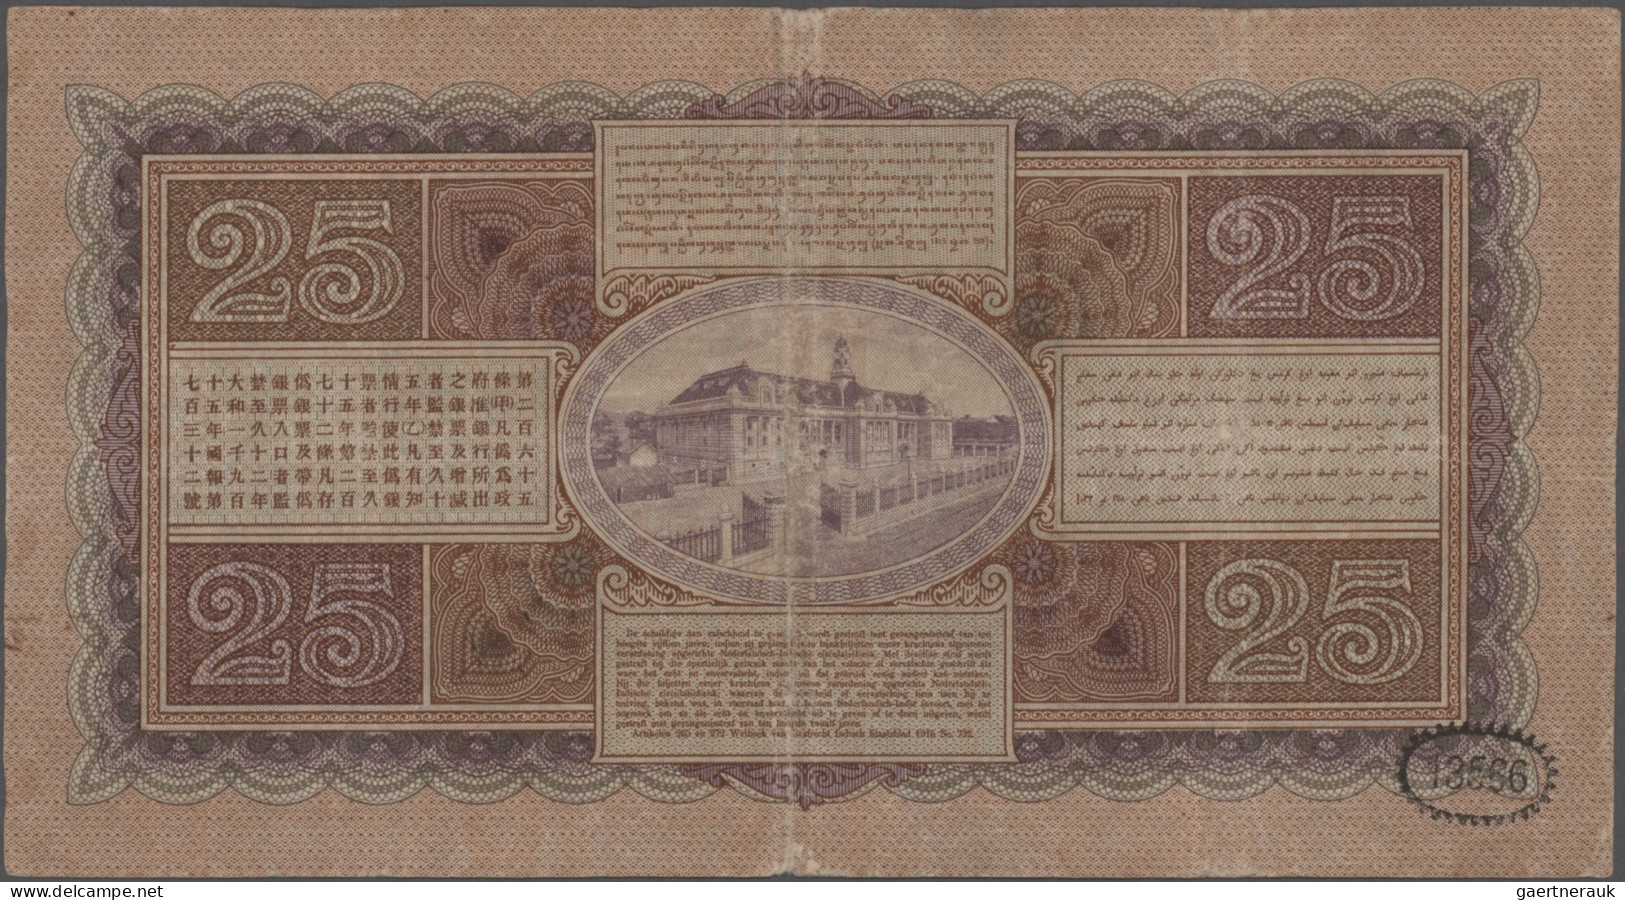 Netherlands Indies: De Javasche Bank, Lot With 3 Banknotes, 2x 25 Gulden 1927 An - Niederländisch-Indien